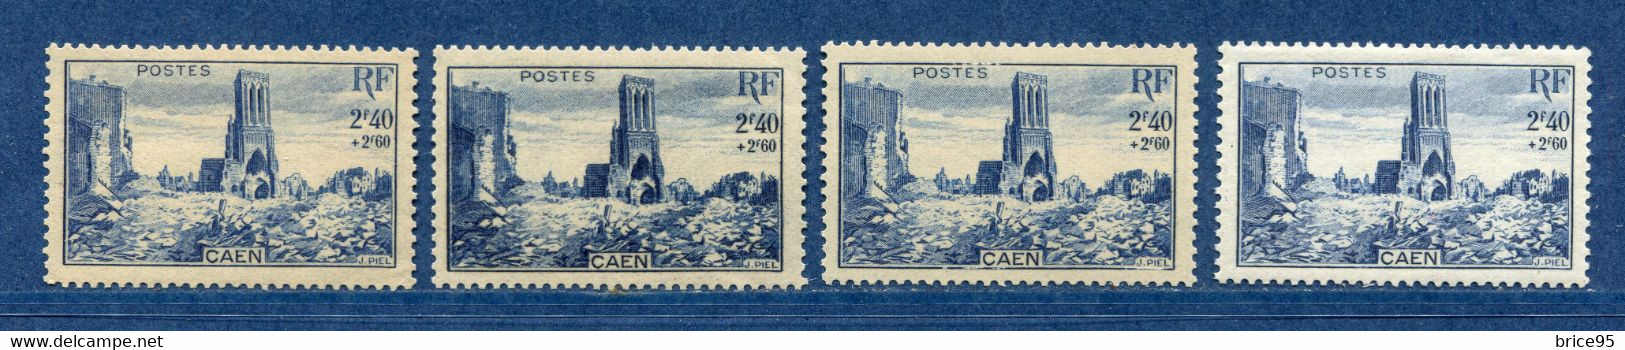 ⭐ France - Variété - YT N° 746 - Couleurs - Pétouille - Neuf Sans Charnière - 1945 ⭐ - Ongebruikt